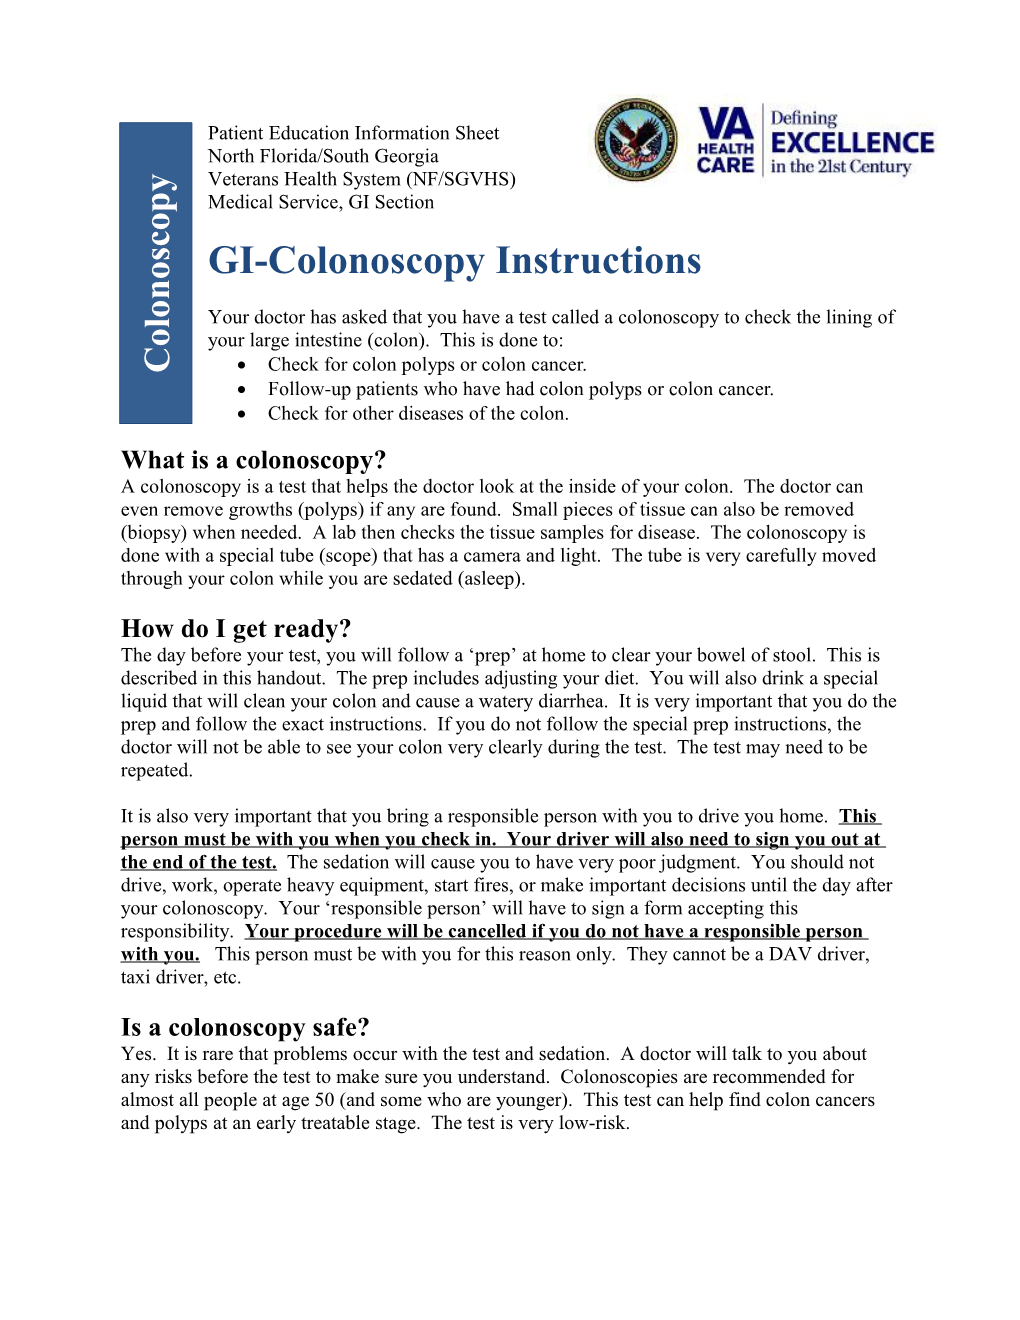 GI- Colonoscopy Instructions